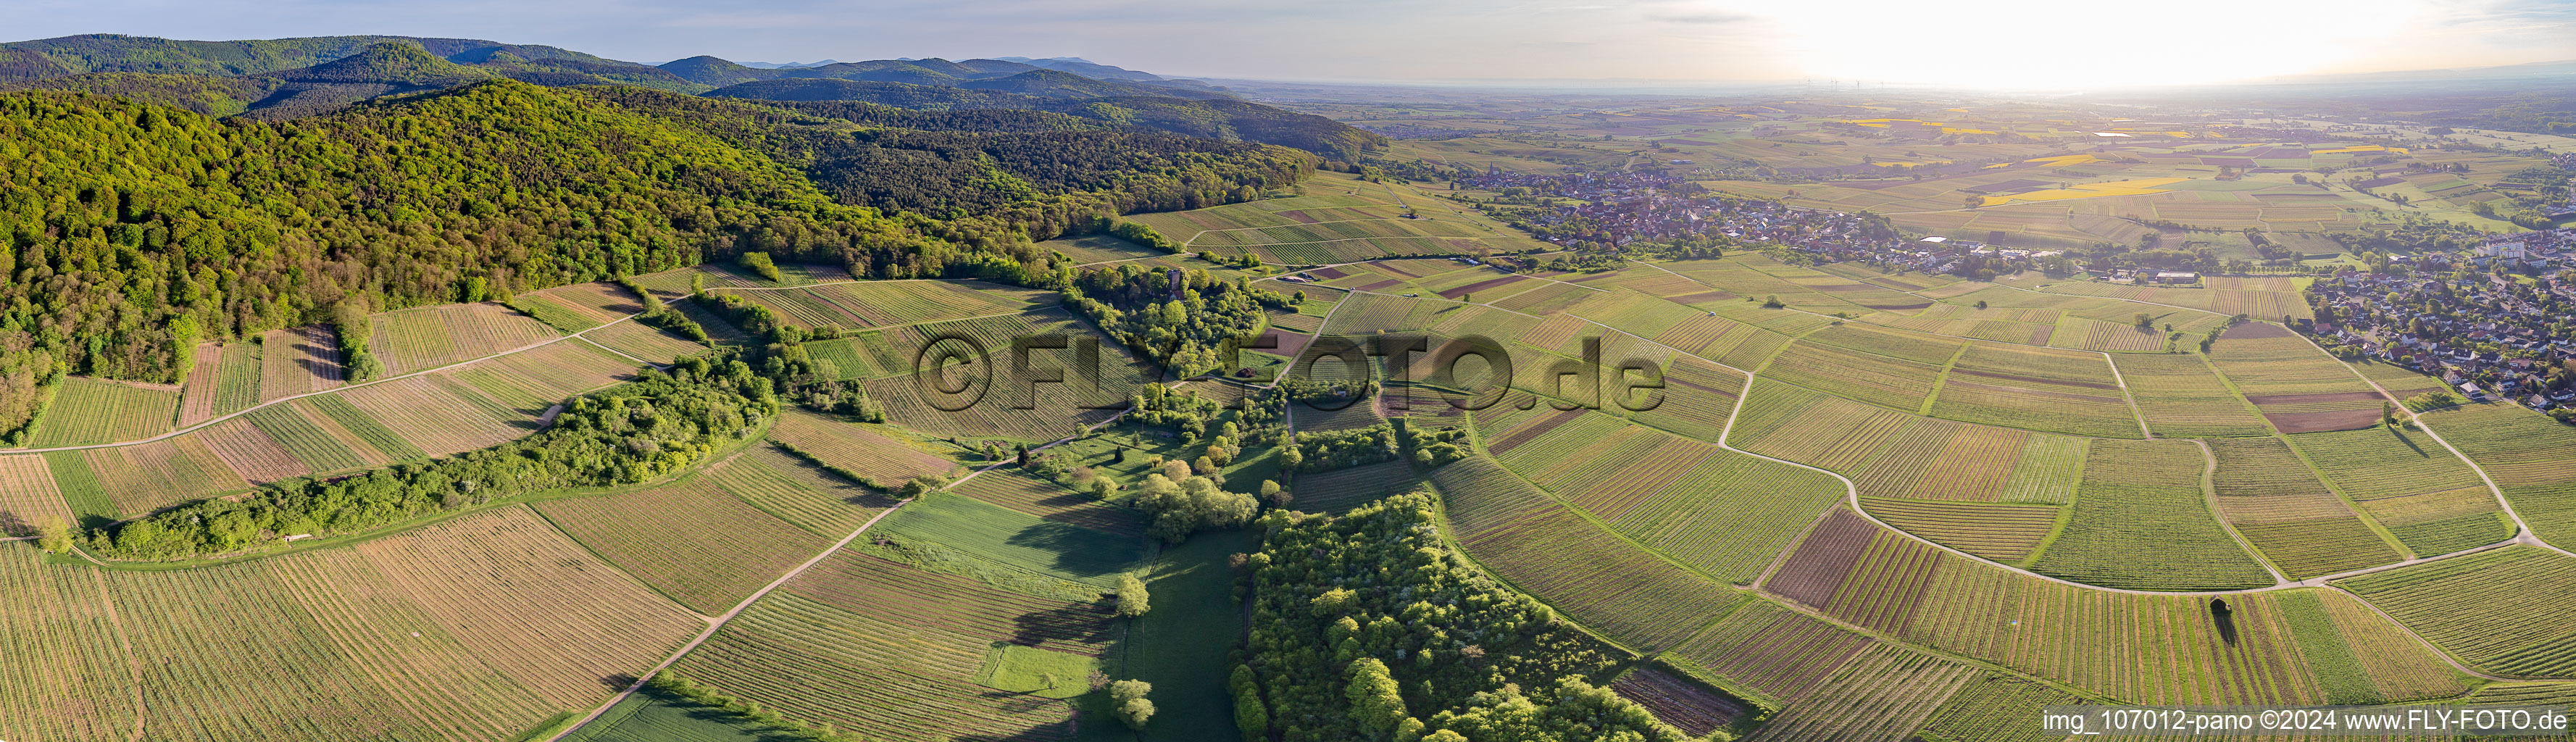 Panorama - Perspektive Weinbergs- Landschaft der Weinlage Sonnenberg in Wissembourg in Grand Est im Bundesland Bas-Rhin, Frankreich